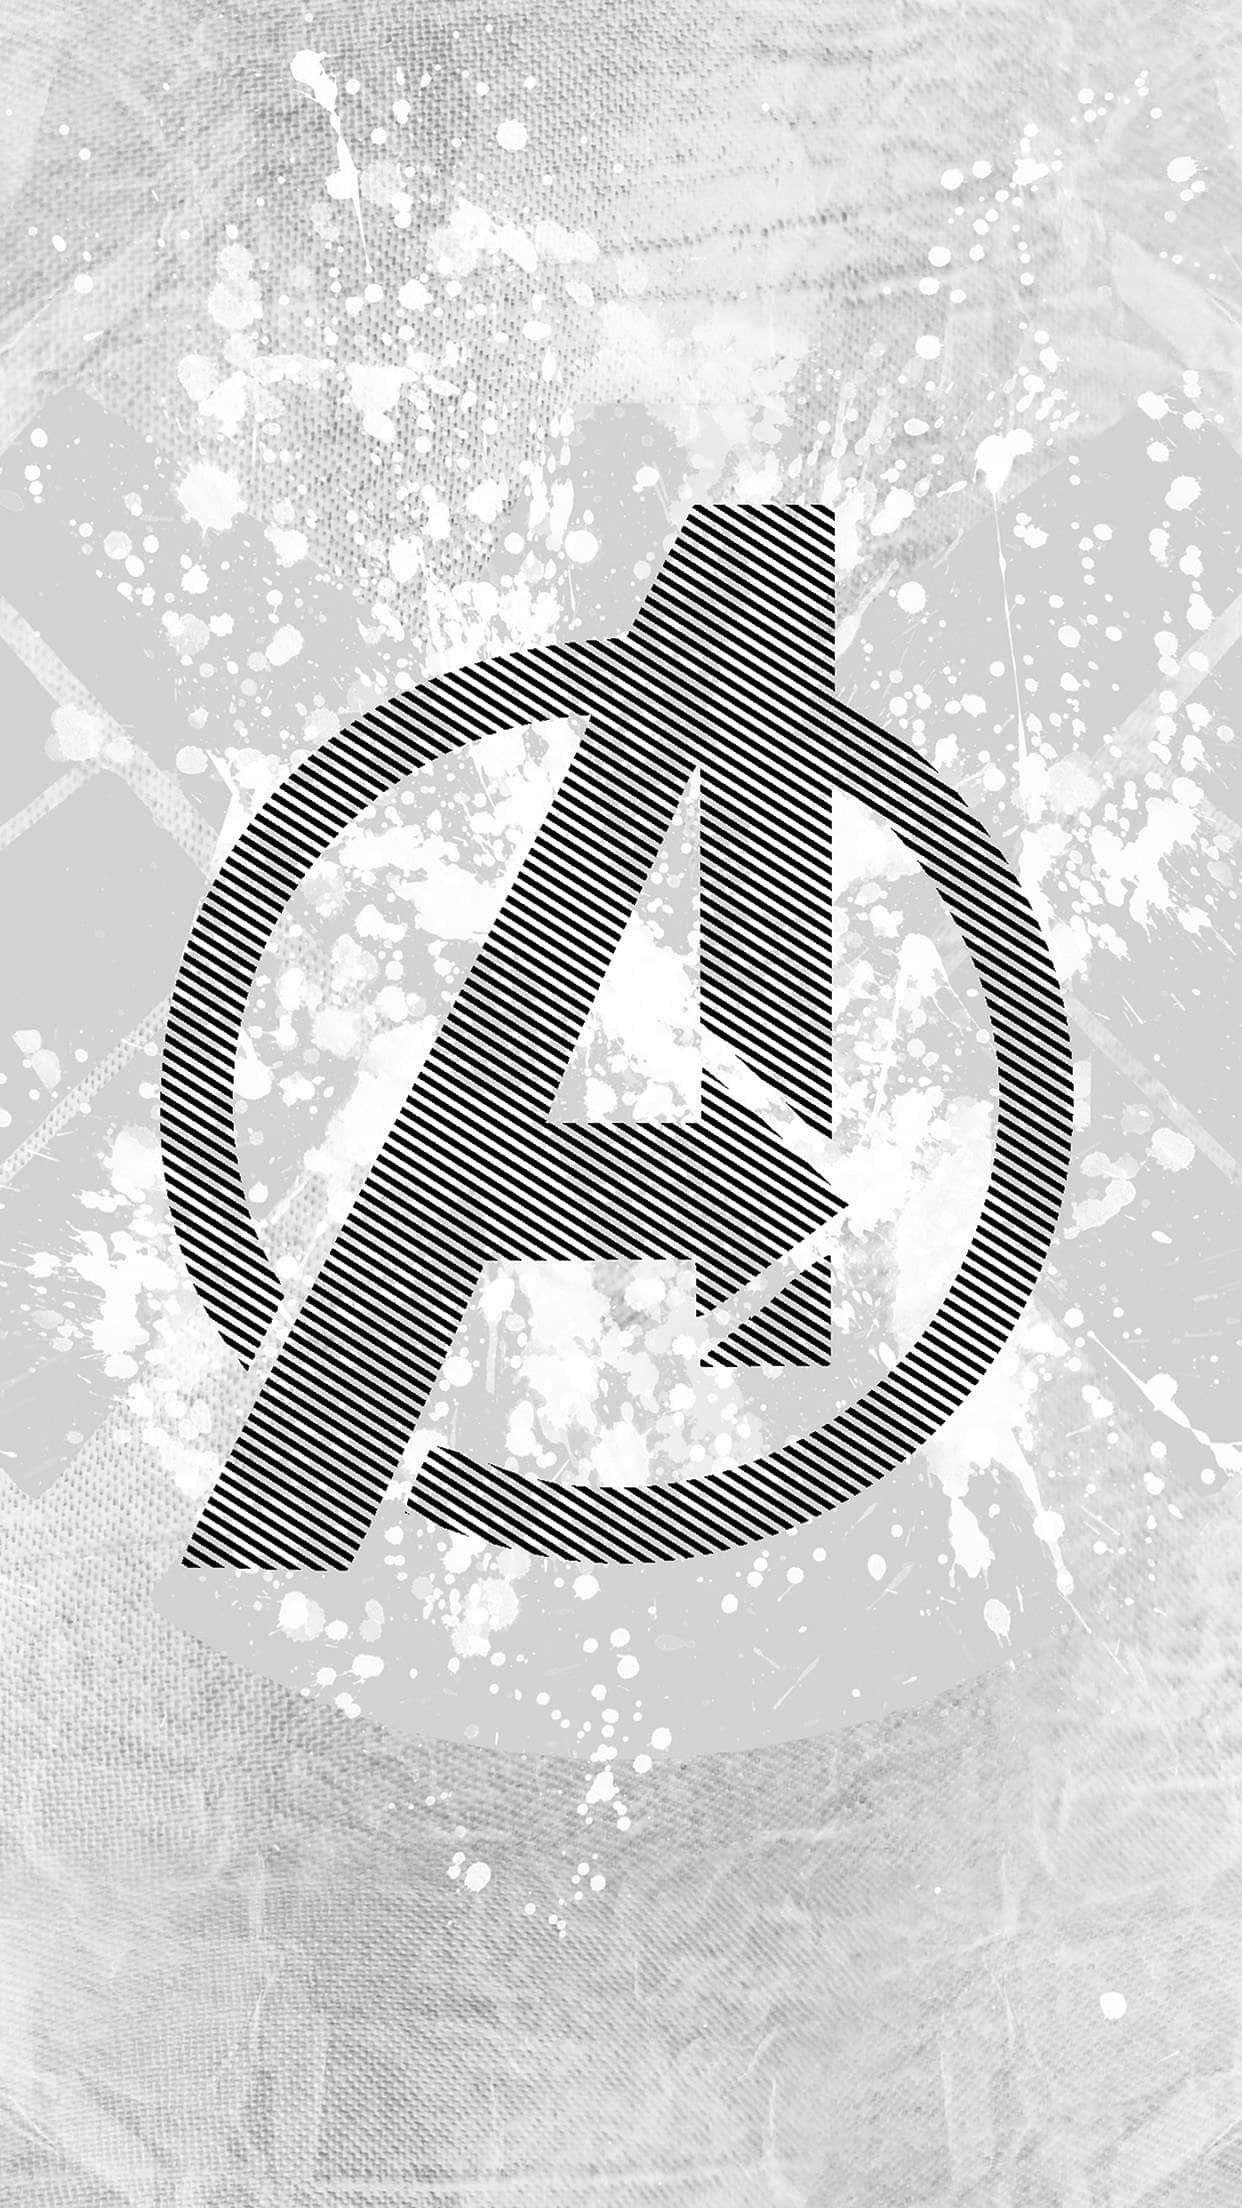 Avengers Logo On A White Background Wallpaper